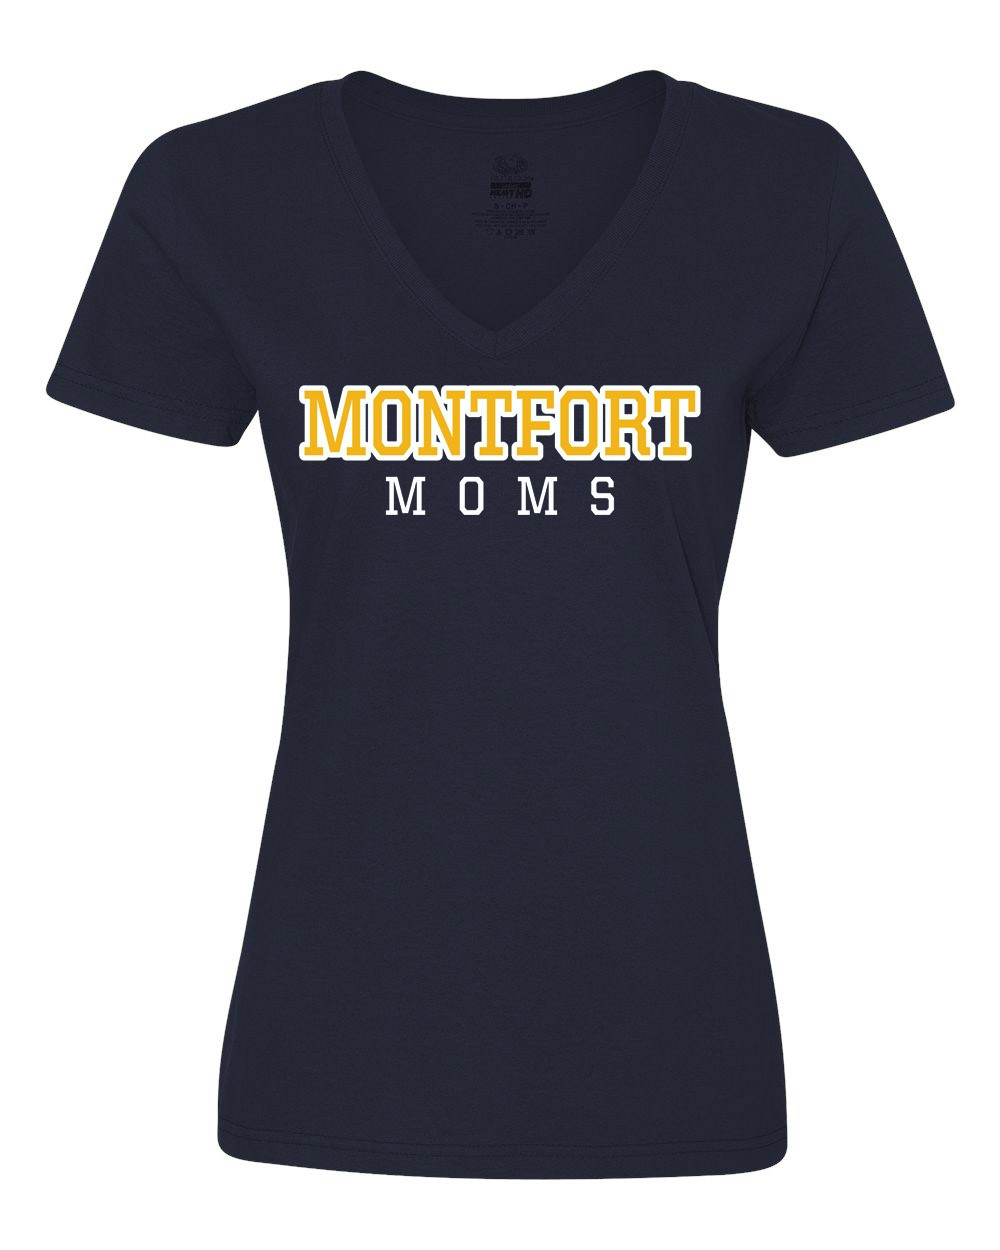 Montfort Spirit S/S Women's V-Neck T-Shirt w/ Montfort Moms Logo - Please Allow 2-3 Weeks for Delivery